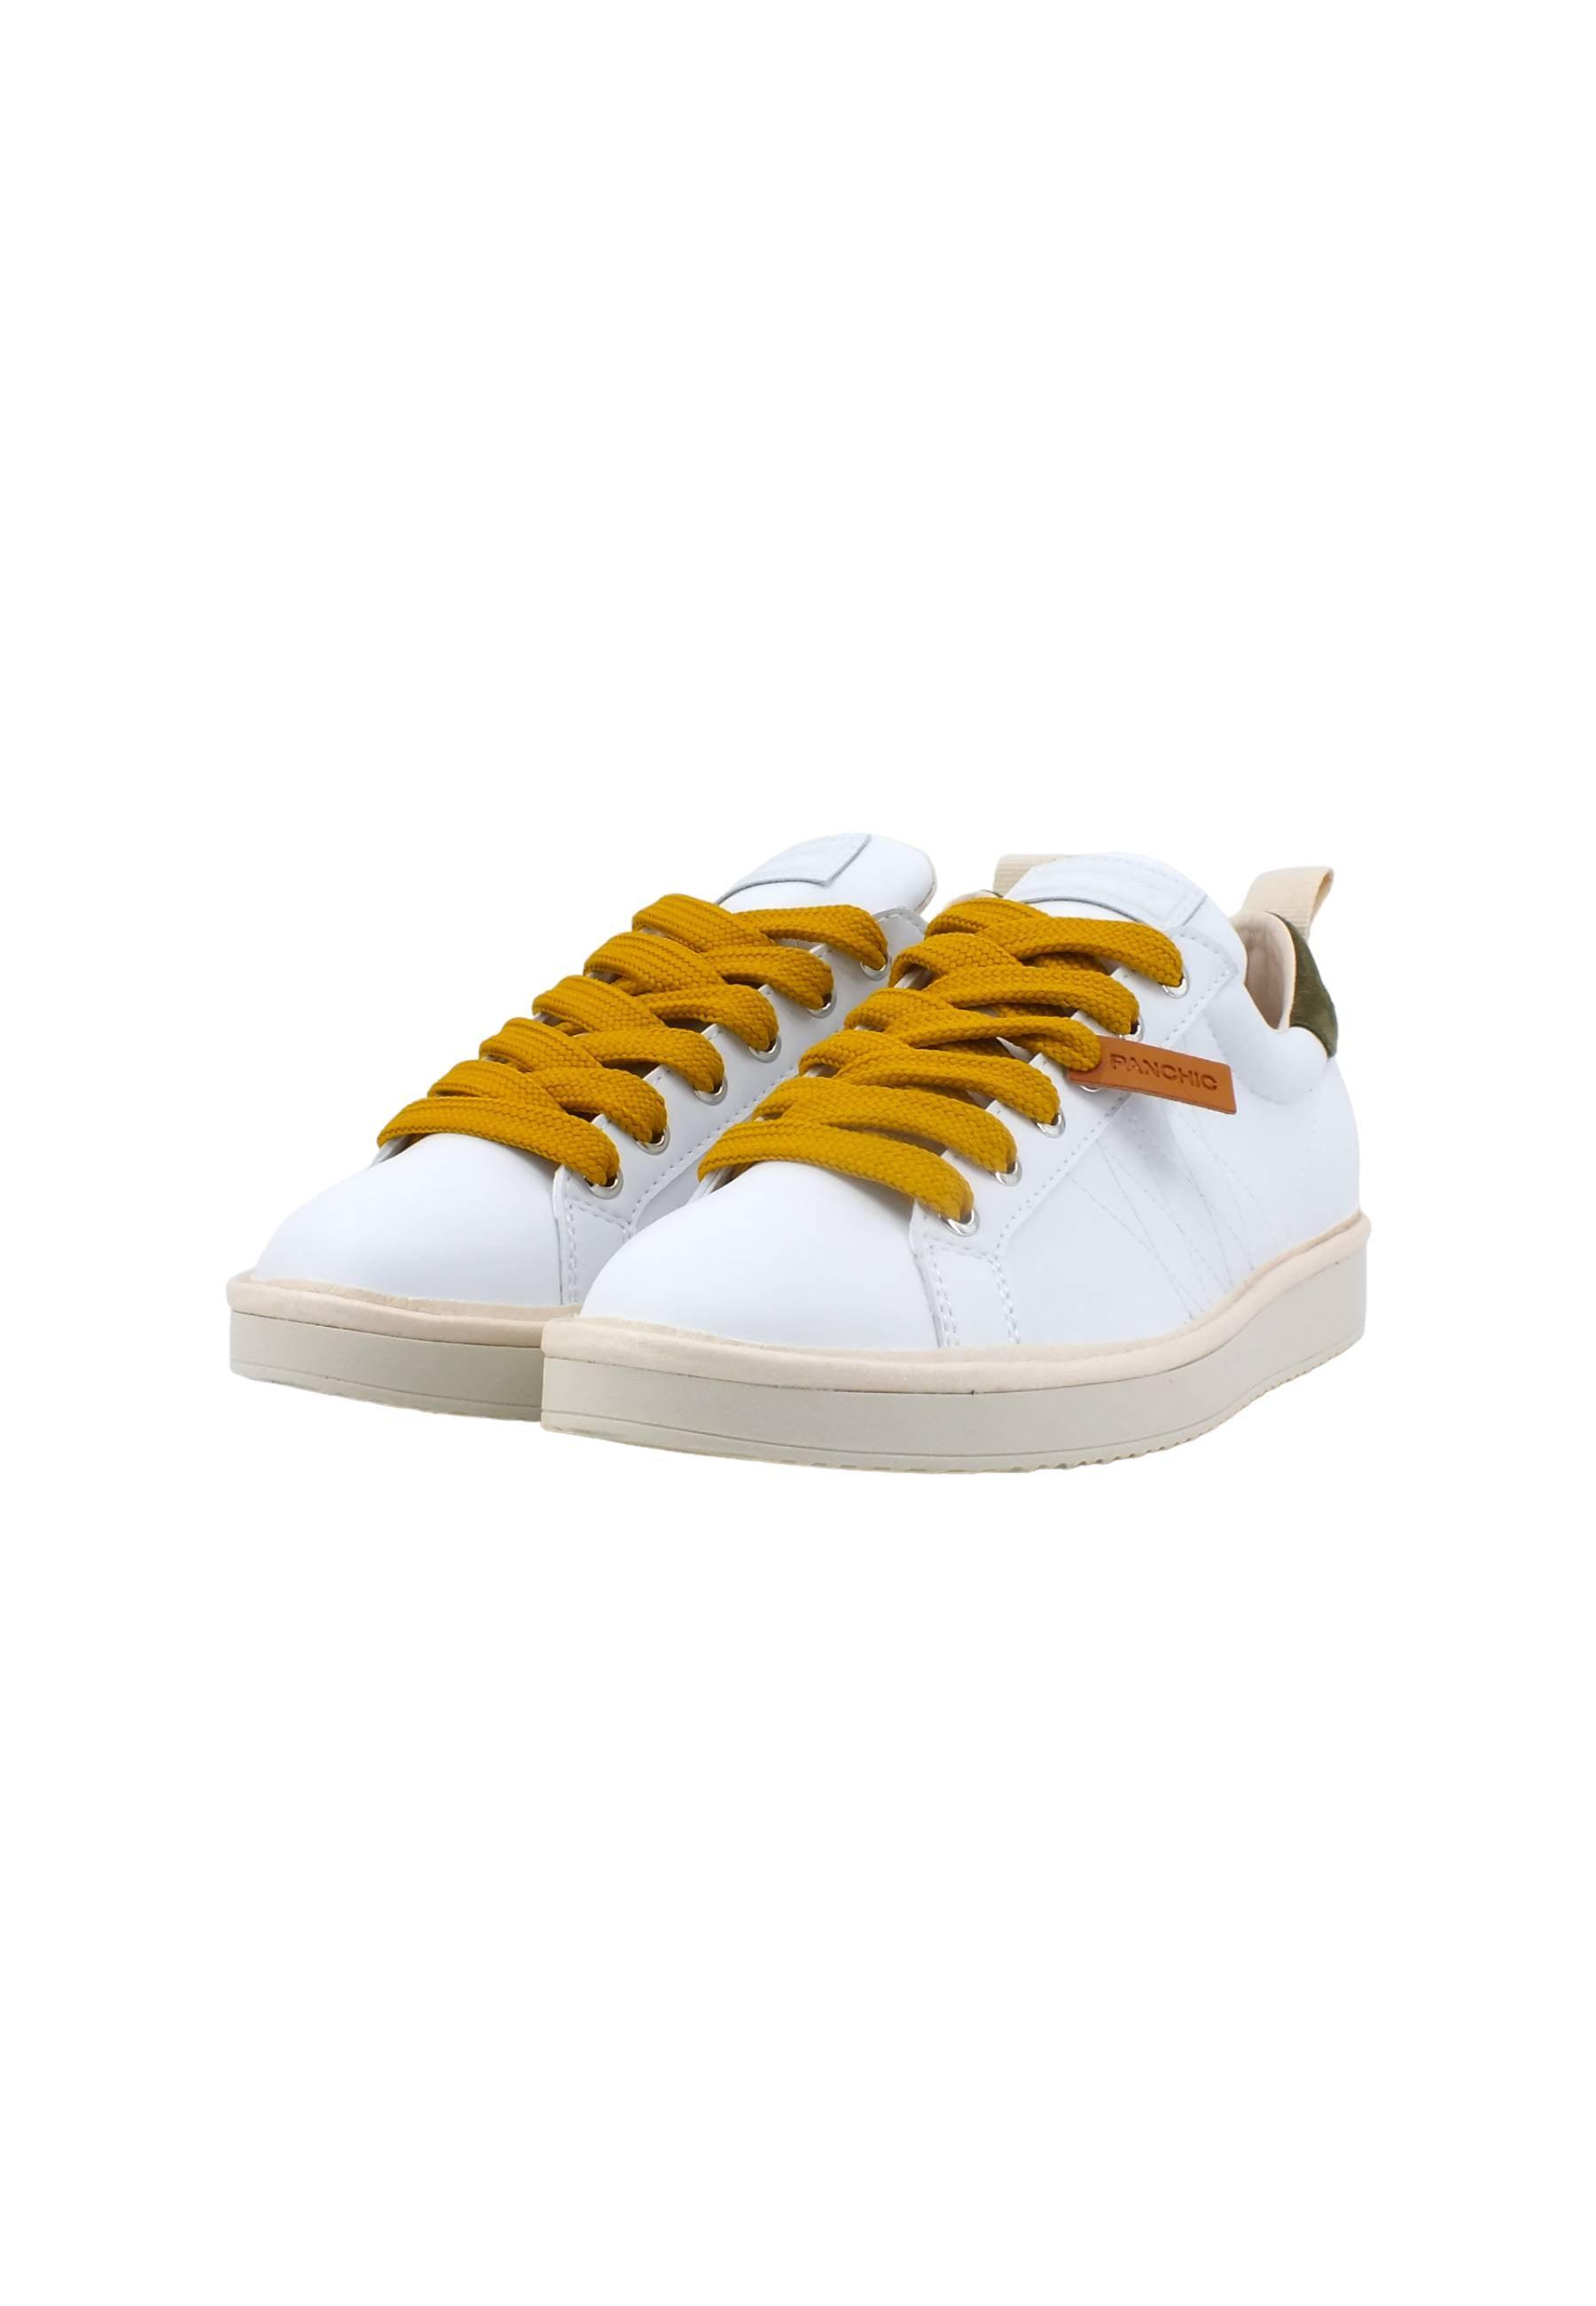 PAN CHIC Sneaker Donna White Sage Yellow P01W00200243004 - Sandrini Calzature e Abbigliamento